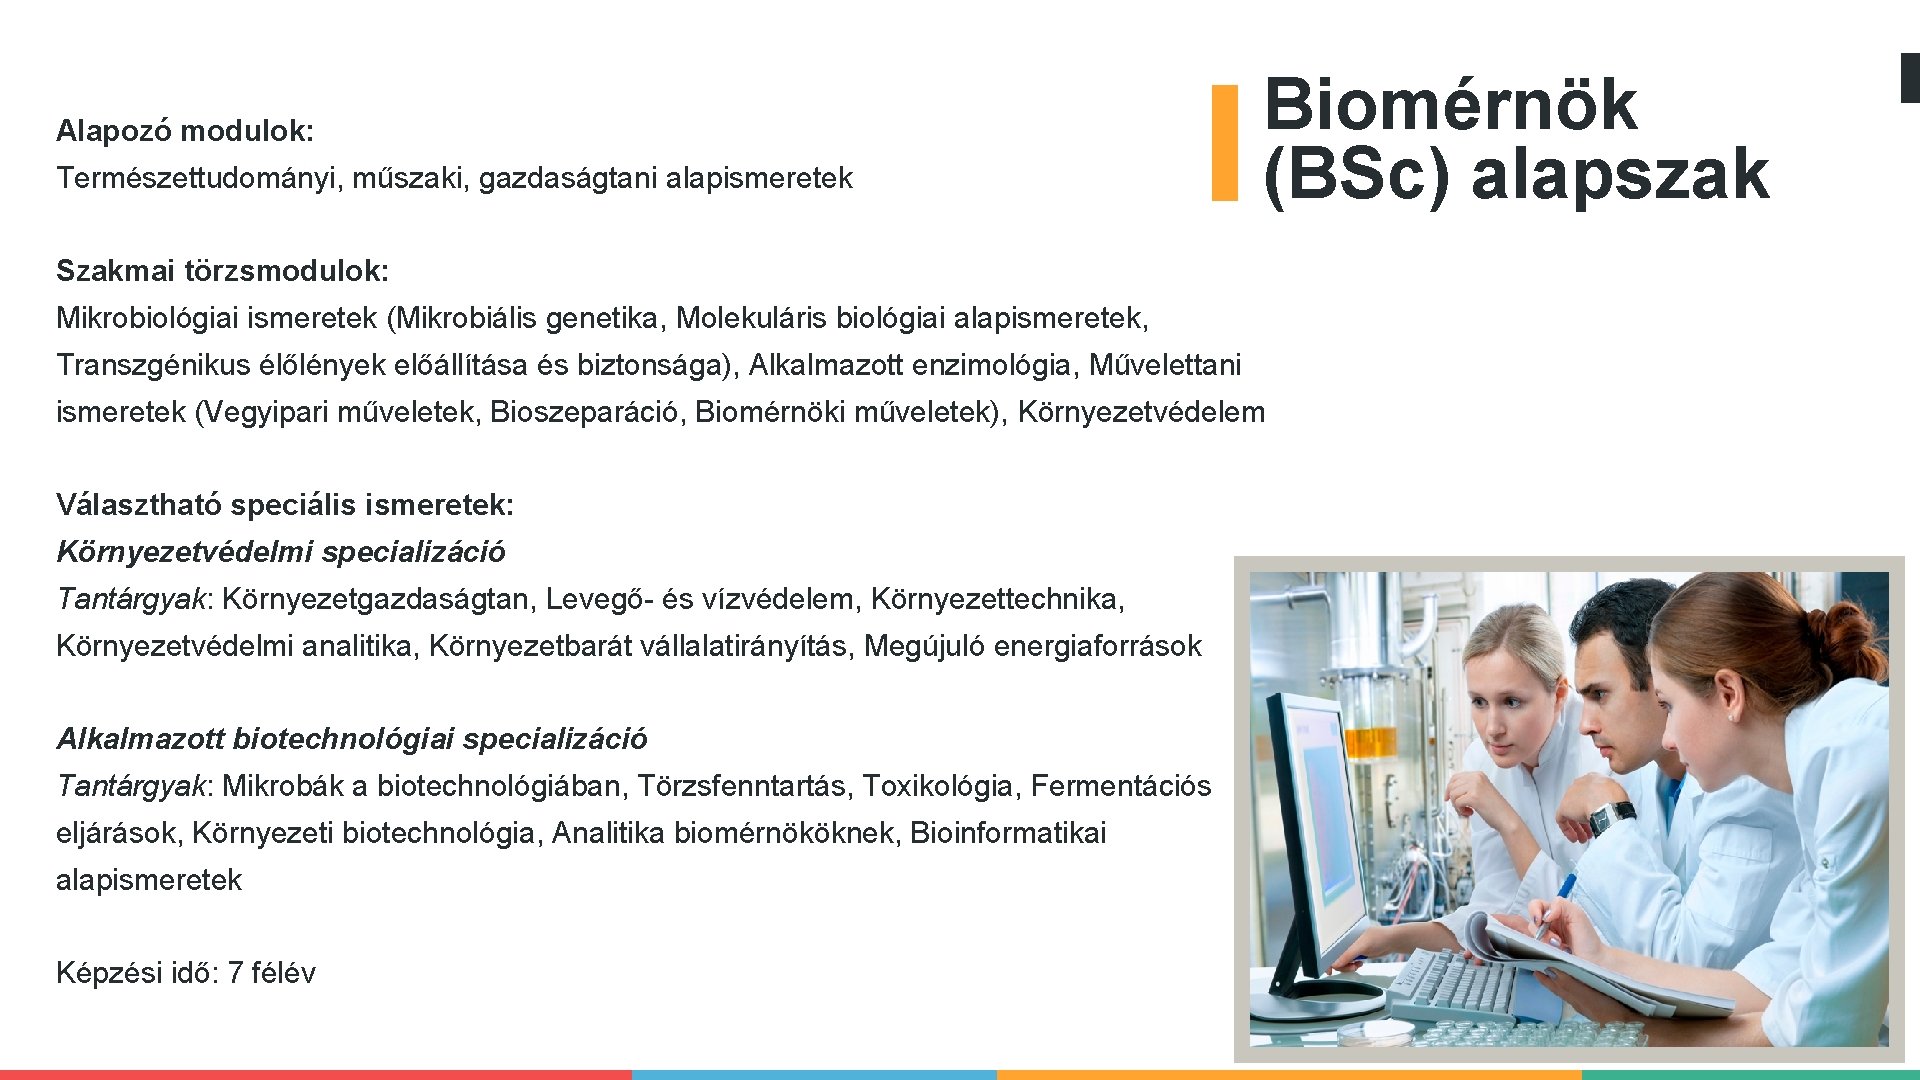 Alapozó modulok: Természettudományi, műszaki, gazdaságtani alapismeretek Biomérnök (BSc) alapszak Szakmai törzsmodulok: Mikrobiológiai ismeretek (Mikrobiális